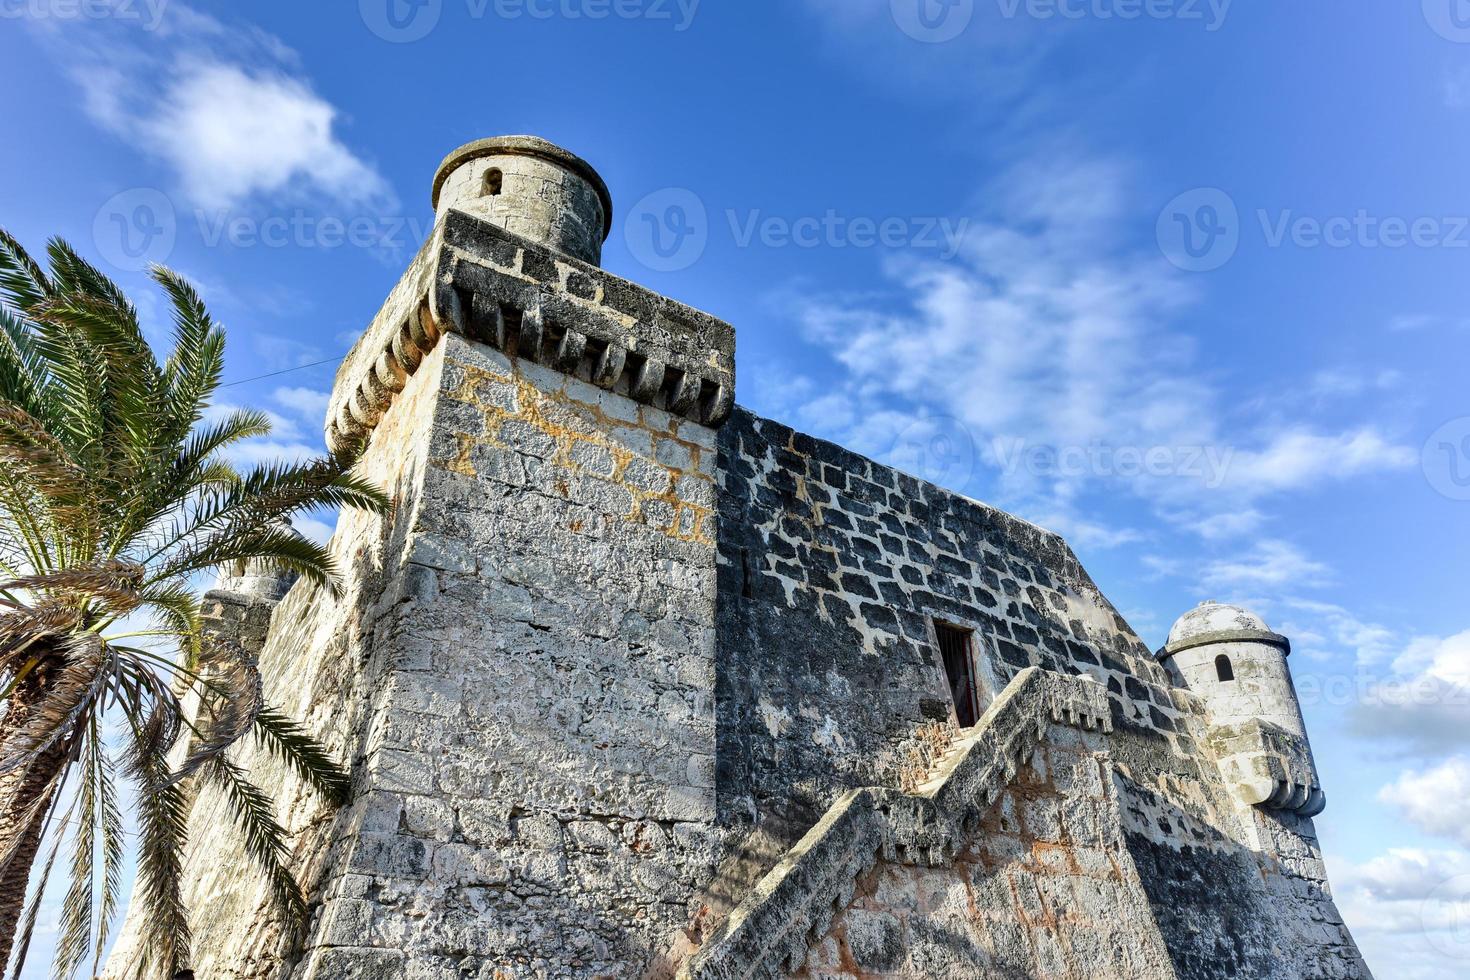 de Spaans fort, torreon de cojimar, in cohimar, Cuba. cojimar is een klein visvangst dorp oosten- van havanna. het was een inspiratie voor ernest hemingways beroemd roman de oud Mens en de zee. foto